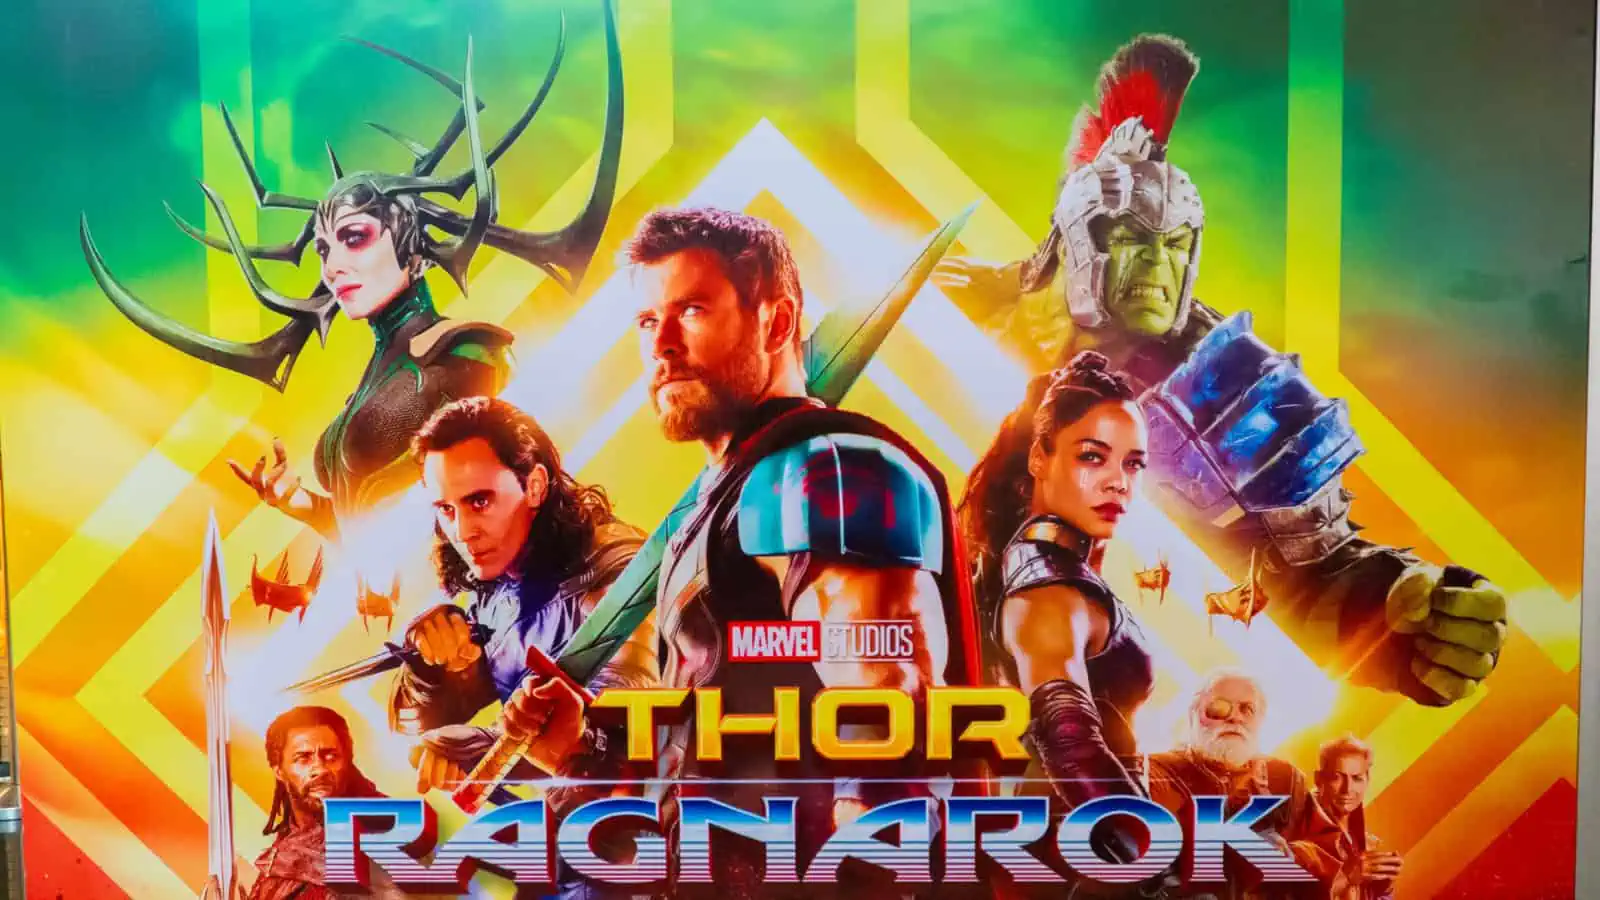 Thor Ragnarok, thor, superhero movie, dc movie, comic movie, marvel movie